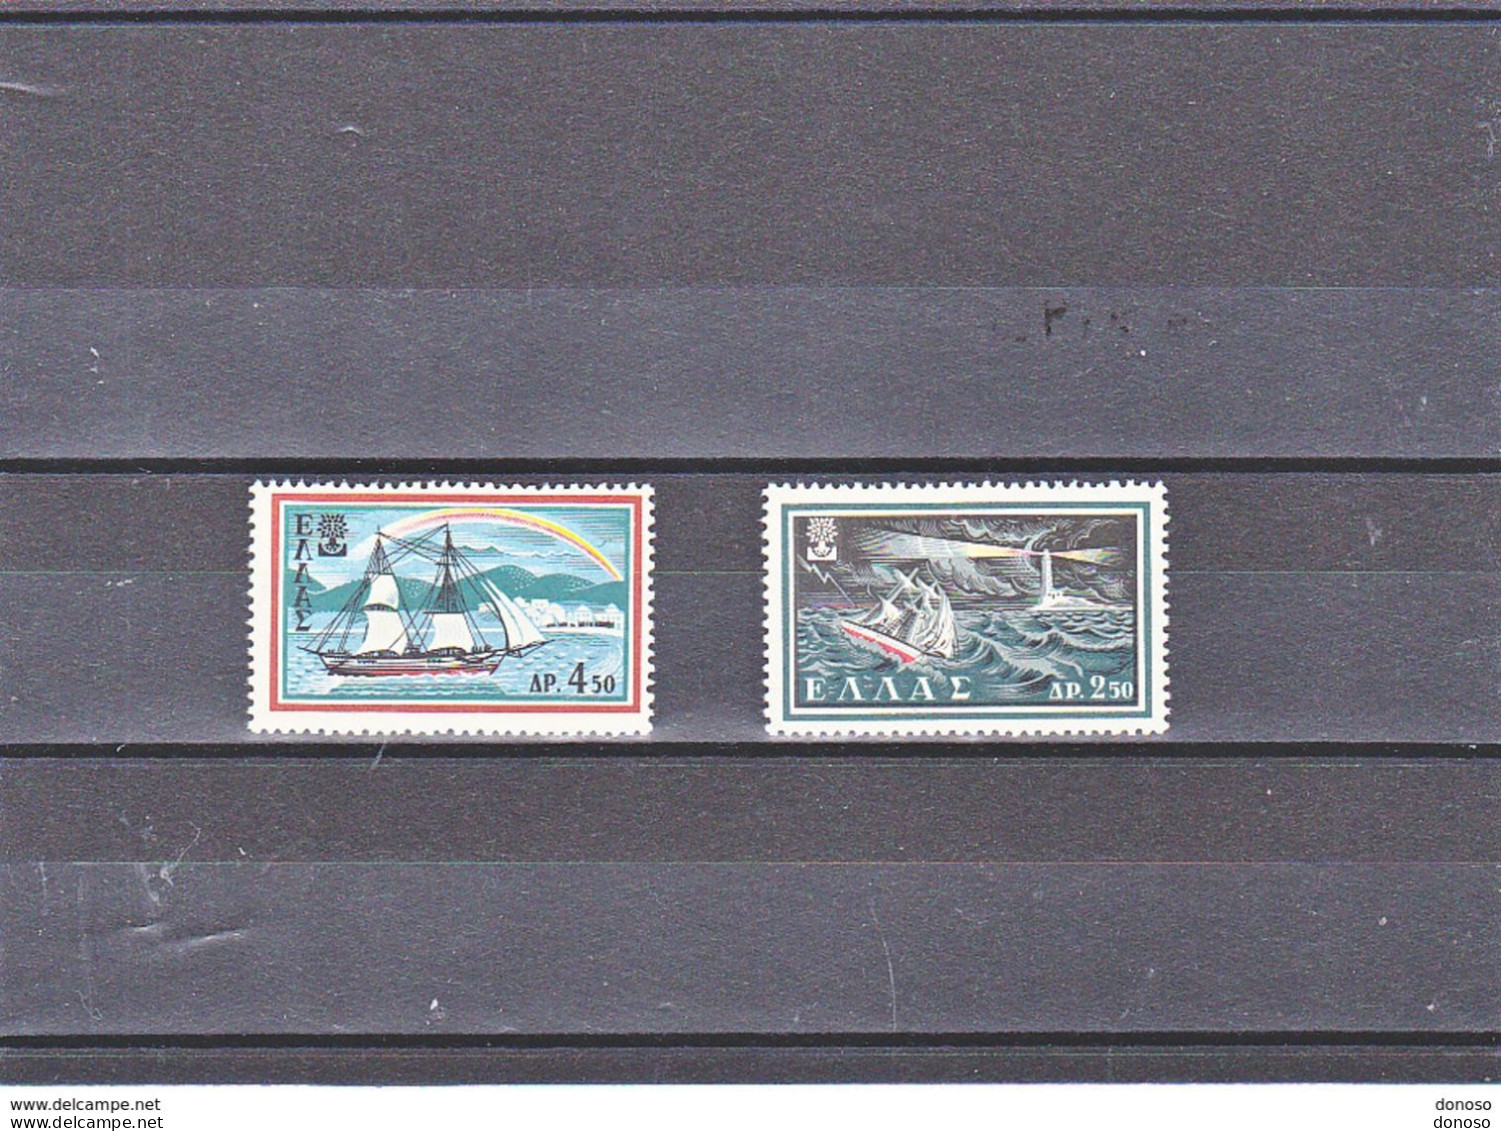 GRECE 1960 Année Mondiale Du Réfugié Yvert 703-704, Michel 724-725  NEUF** MNH - Unused Stamps